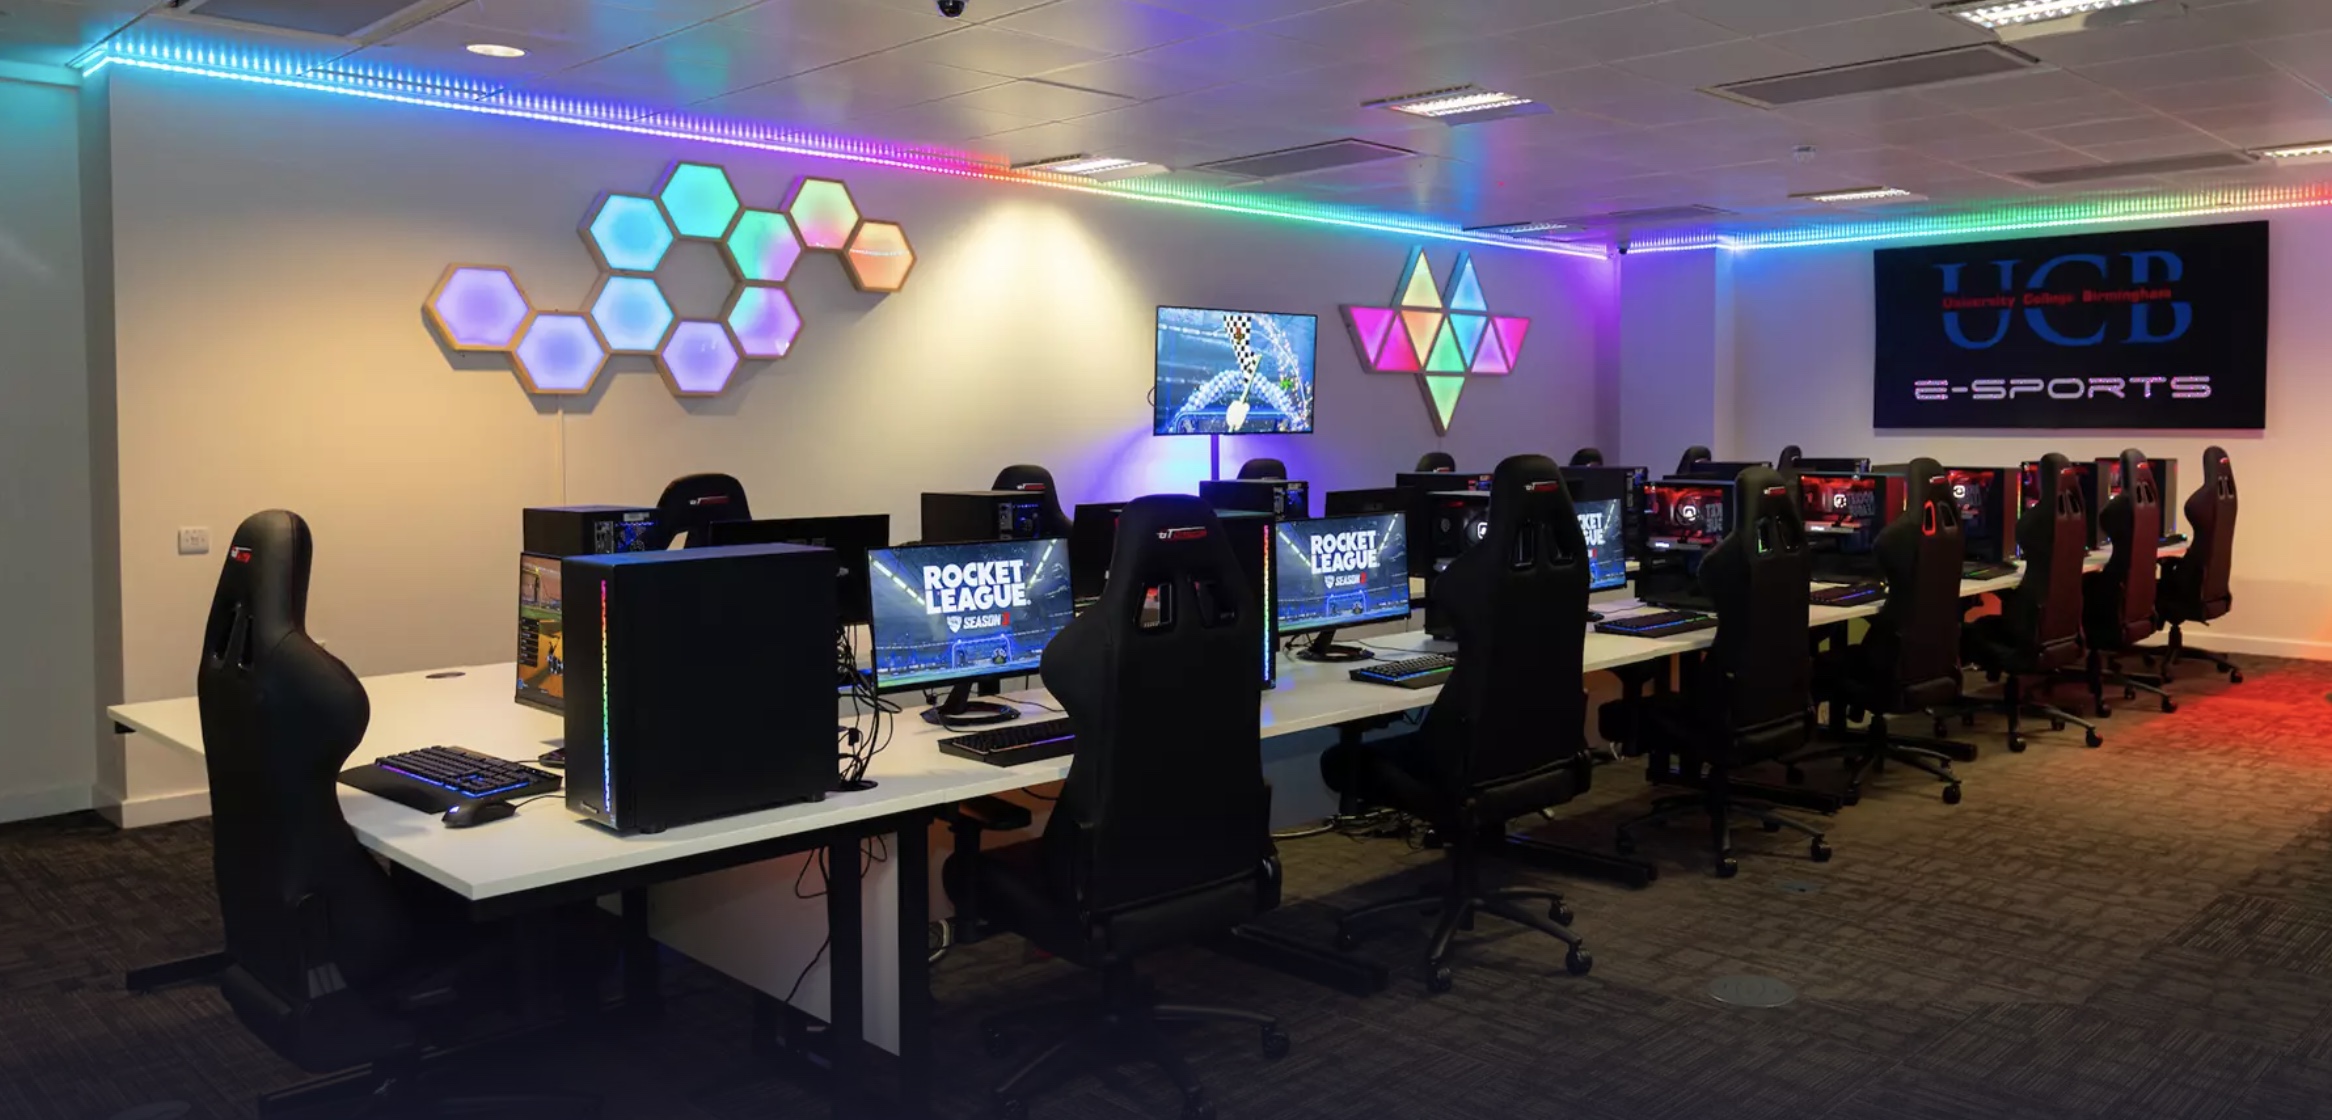 Moderne esports-gamingruimte met rijen computers en ergonomische stoelen, sfeervol verlicht met RGB-lampen en hexagonale wandpanelen.